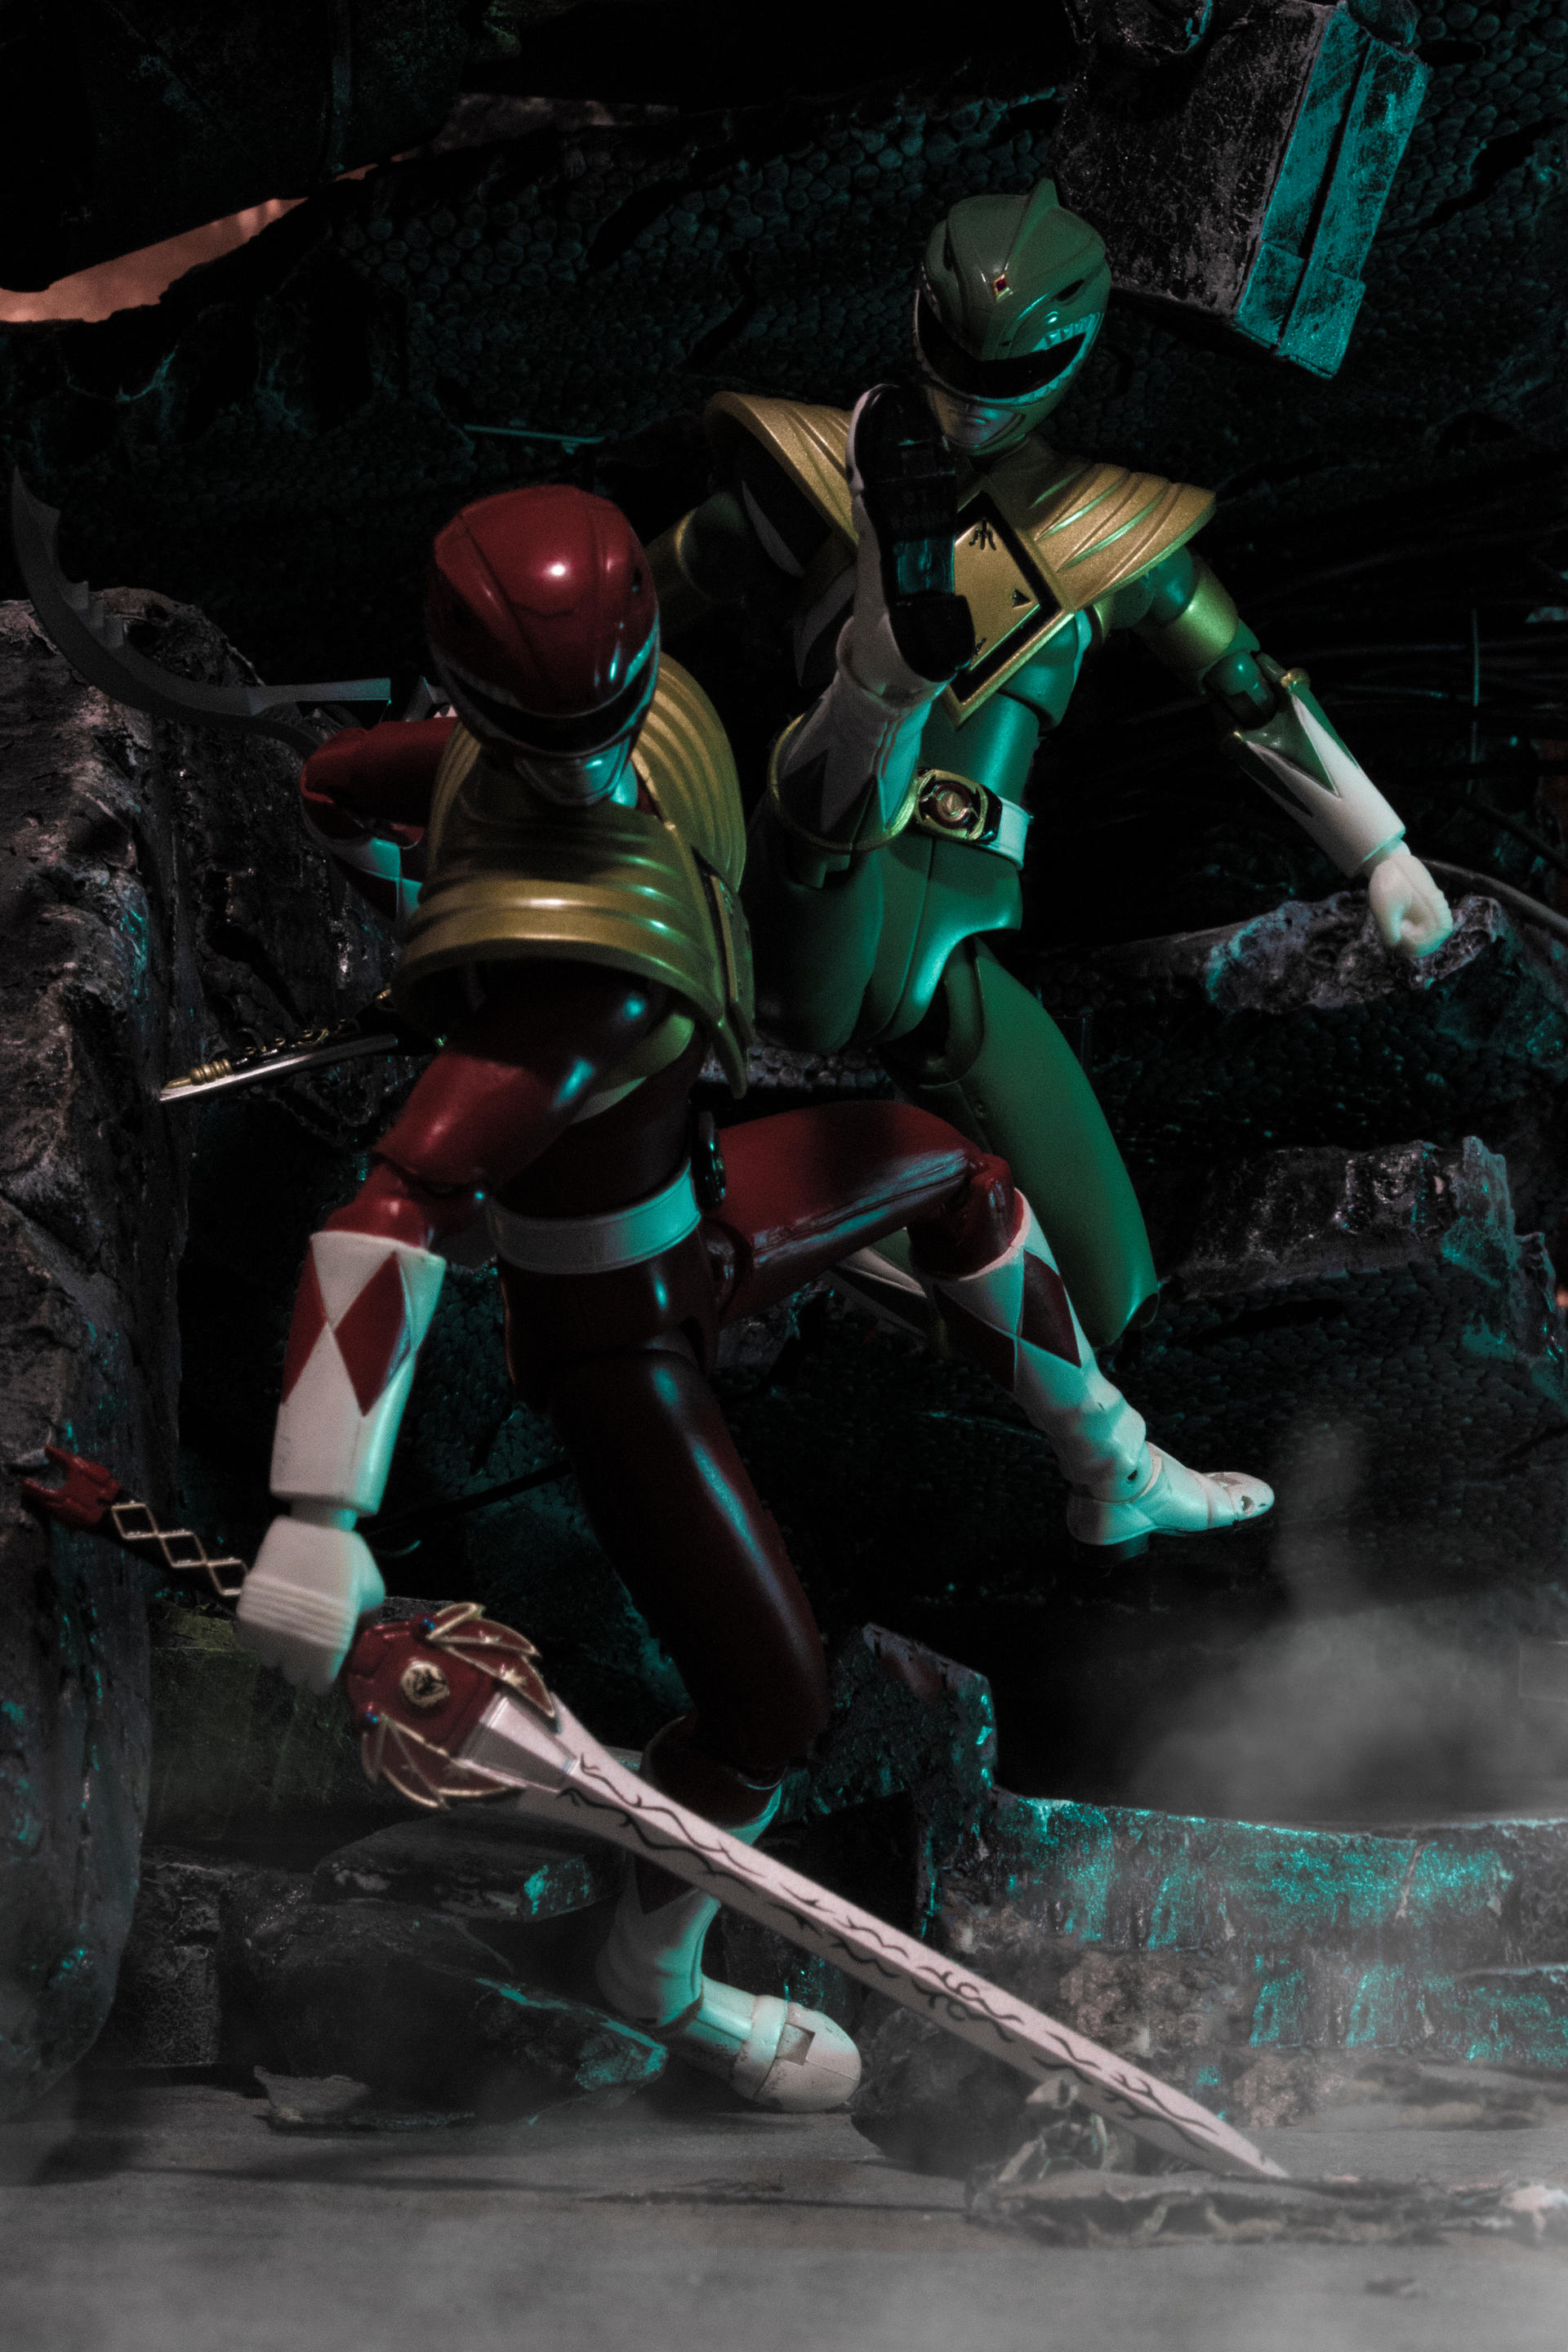 Red Ranger Vs Green Ranger By Mkblaze On Deviantart